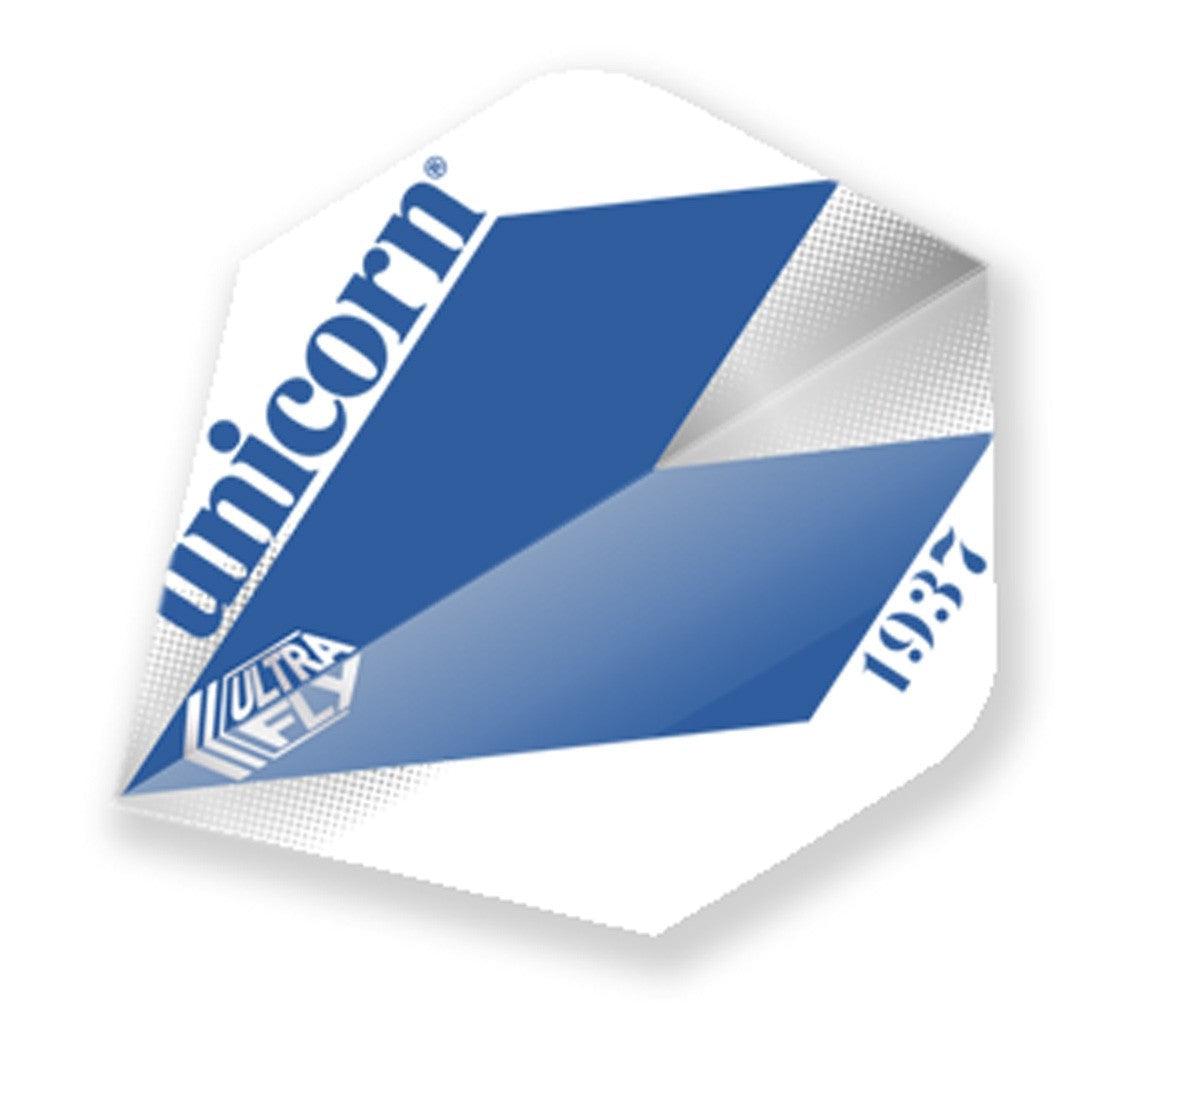 Unicorn Classic Big Wing Dart Flight - Comet Blue-Dart Flights-Pro Sports